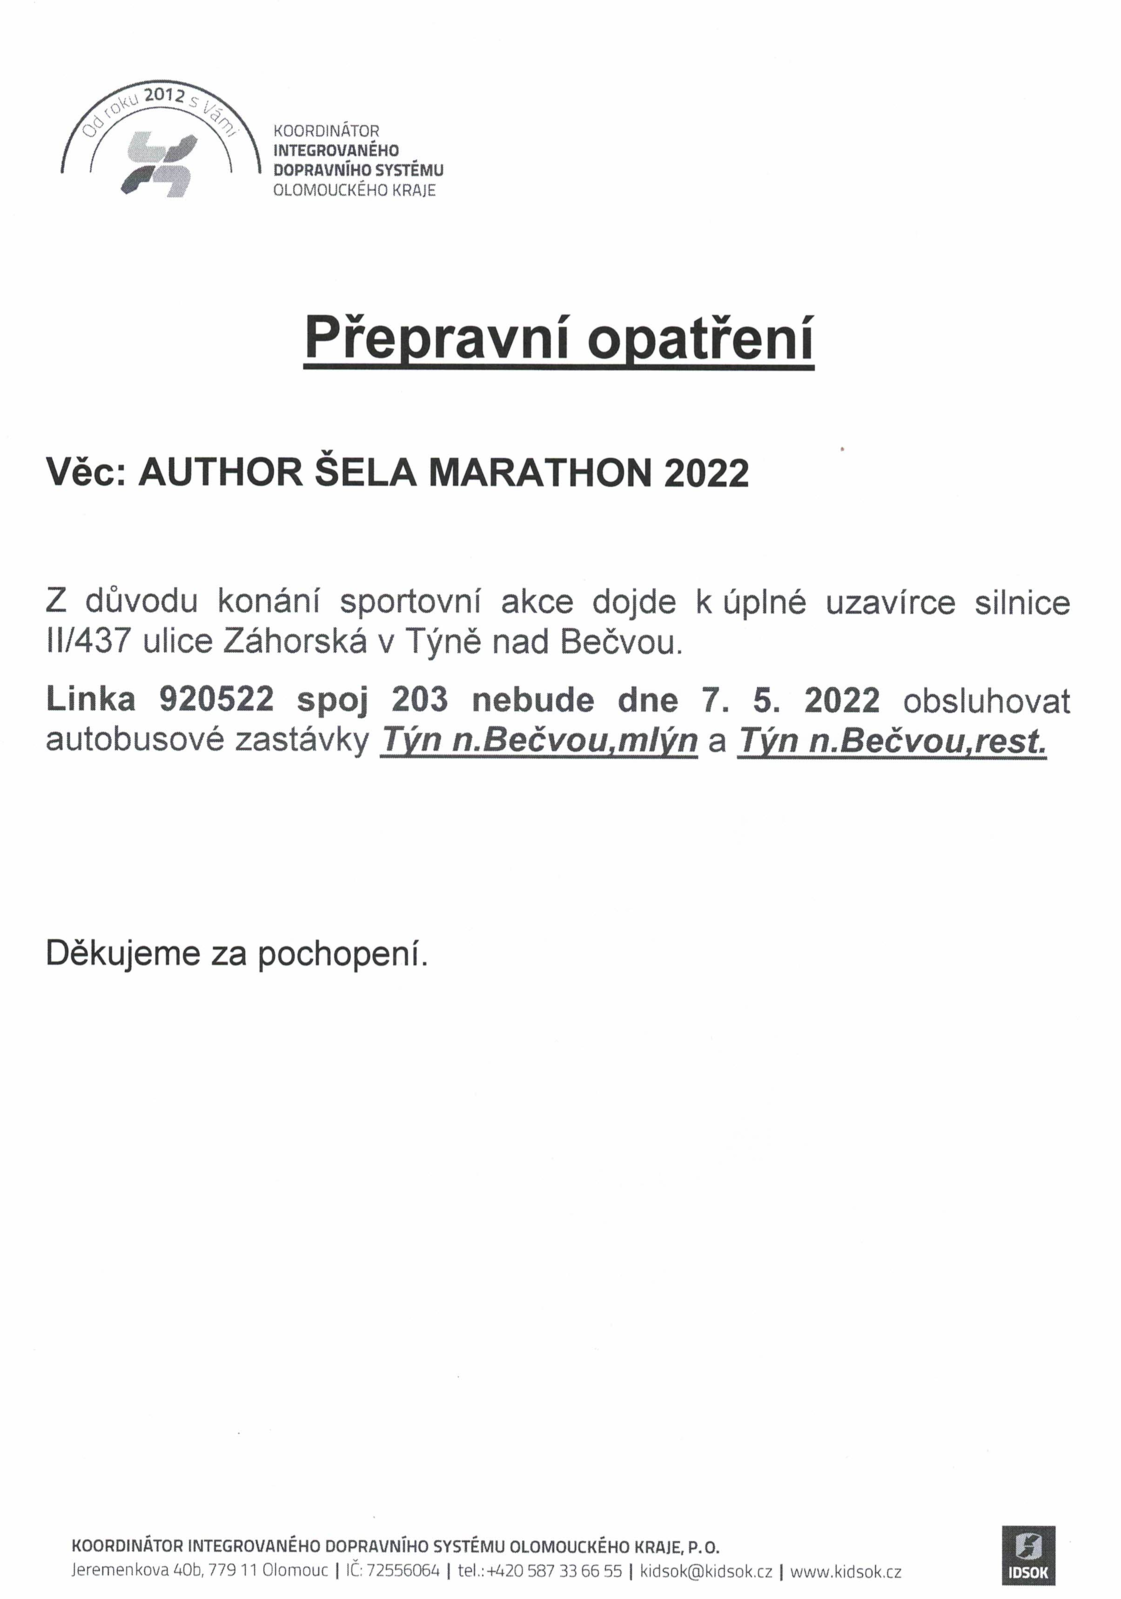 Přepravní opatření - Author šela maraton 2022.png